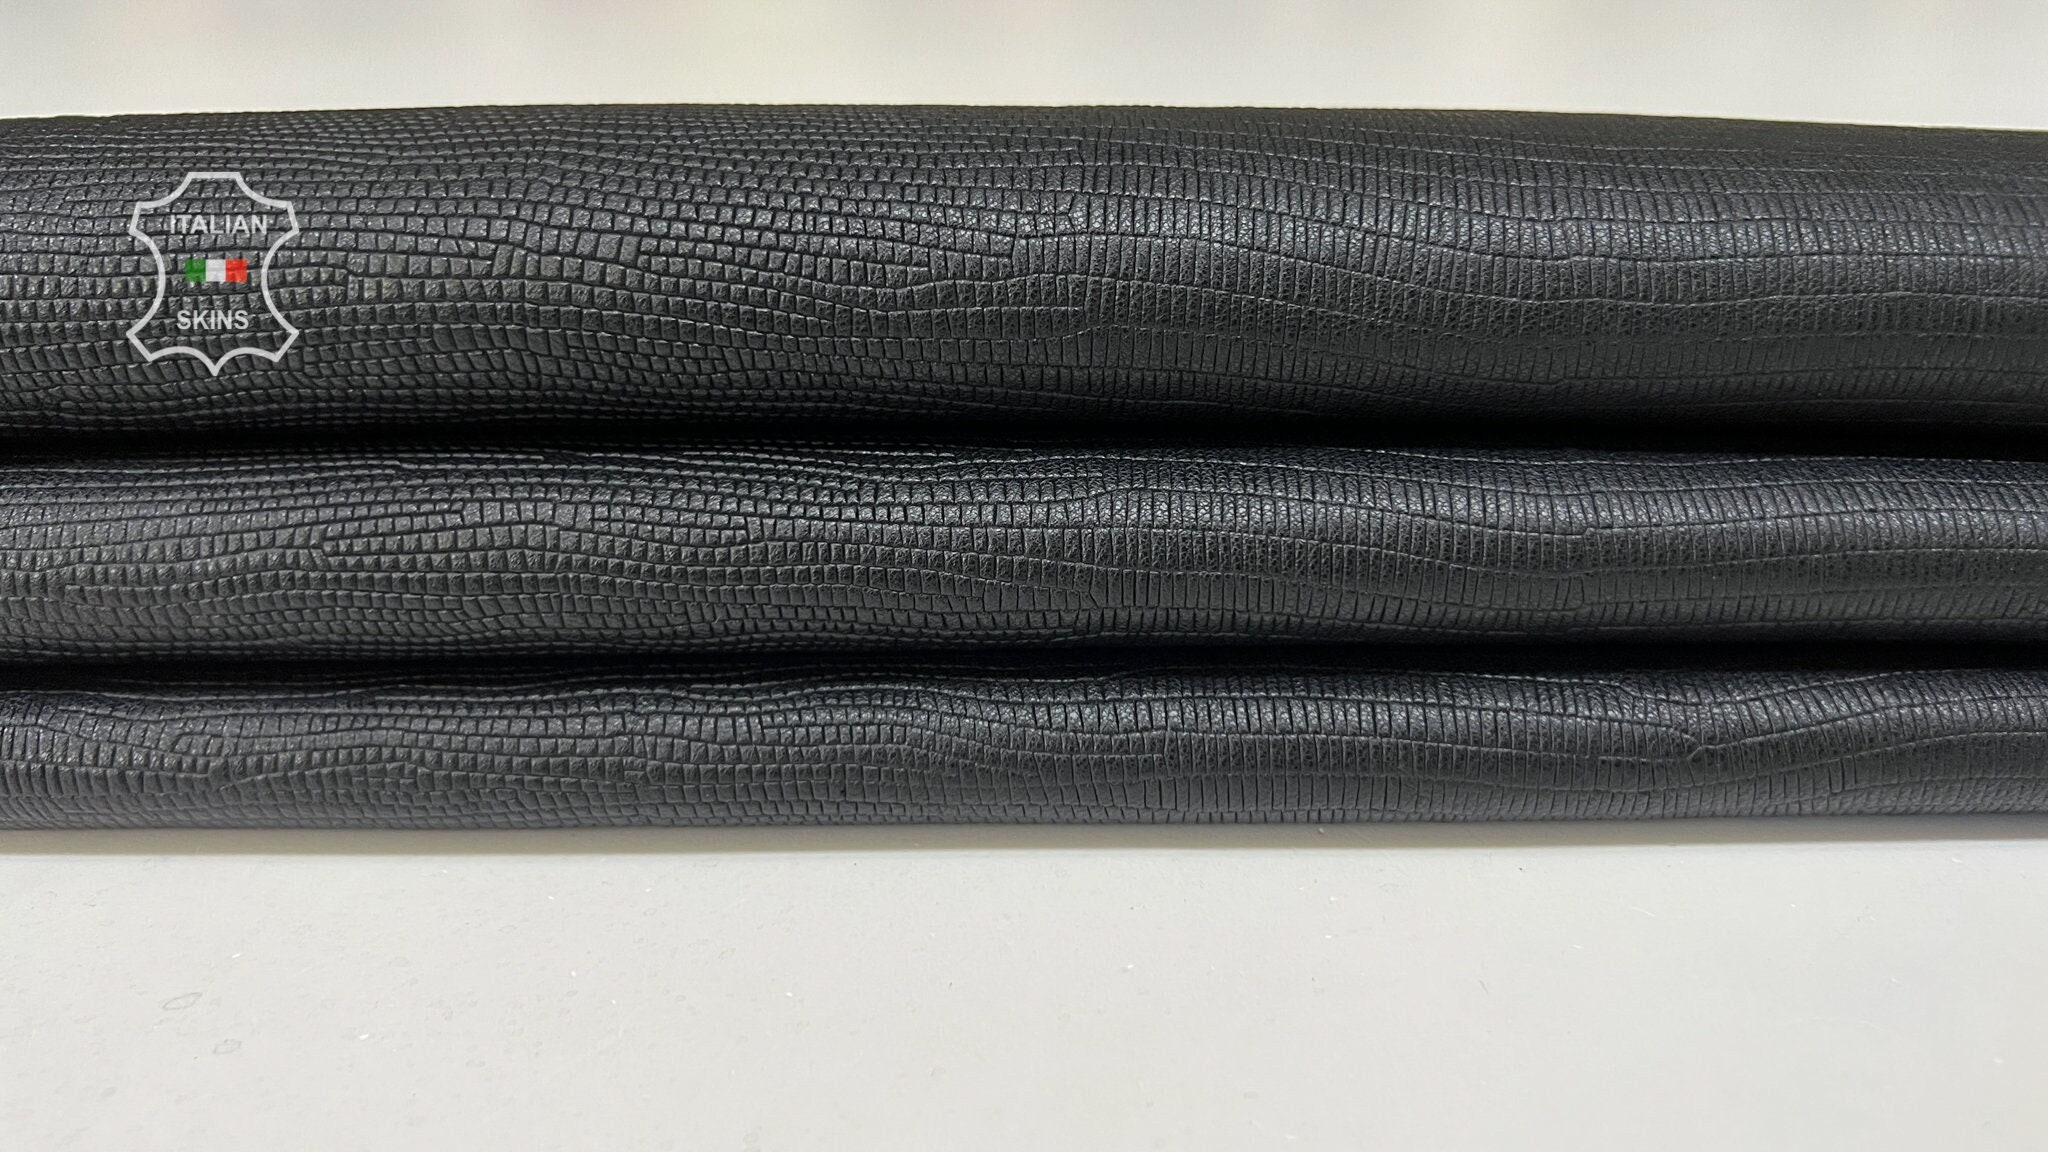 1 YD Stretchy Vegan Soft Leather Fabric 2 Way Stretch Print 1 Black  Crocodile Skin Texture 